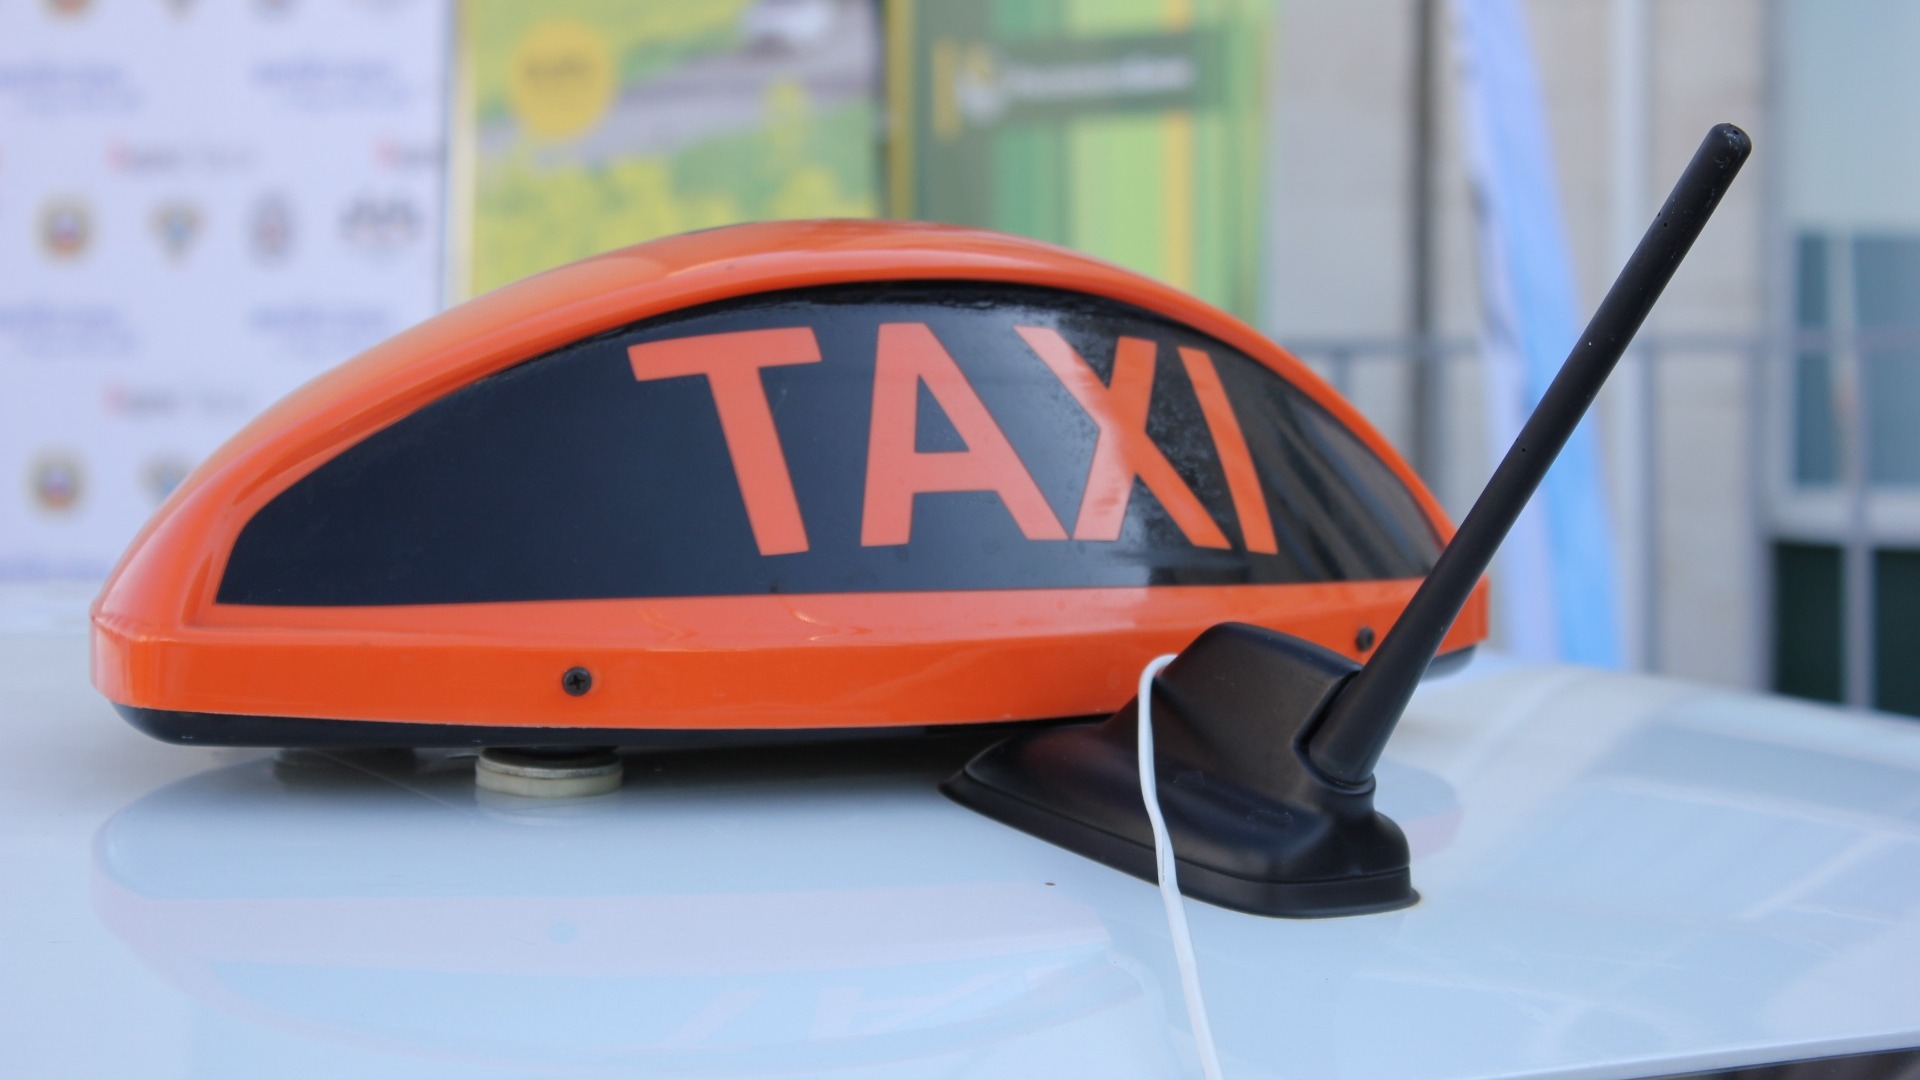 Таксист в Екатеринбурге украл с карты пассажира почти 20 тысяч рублей